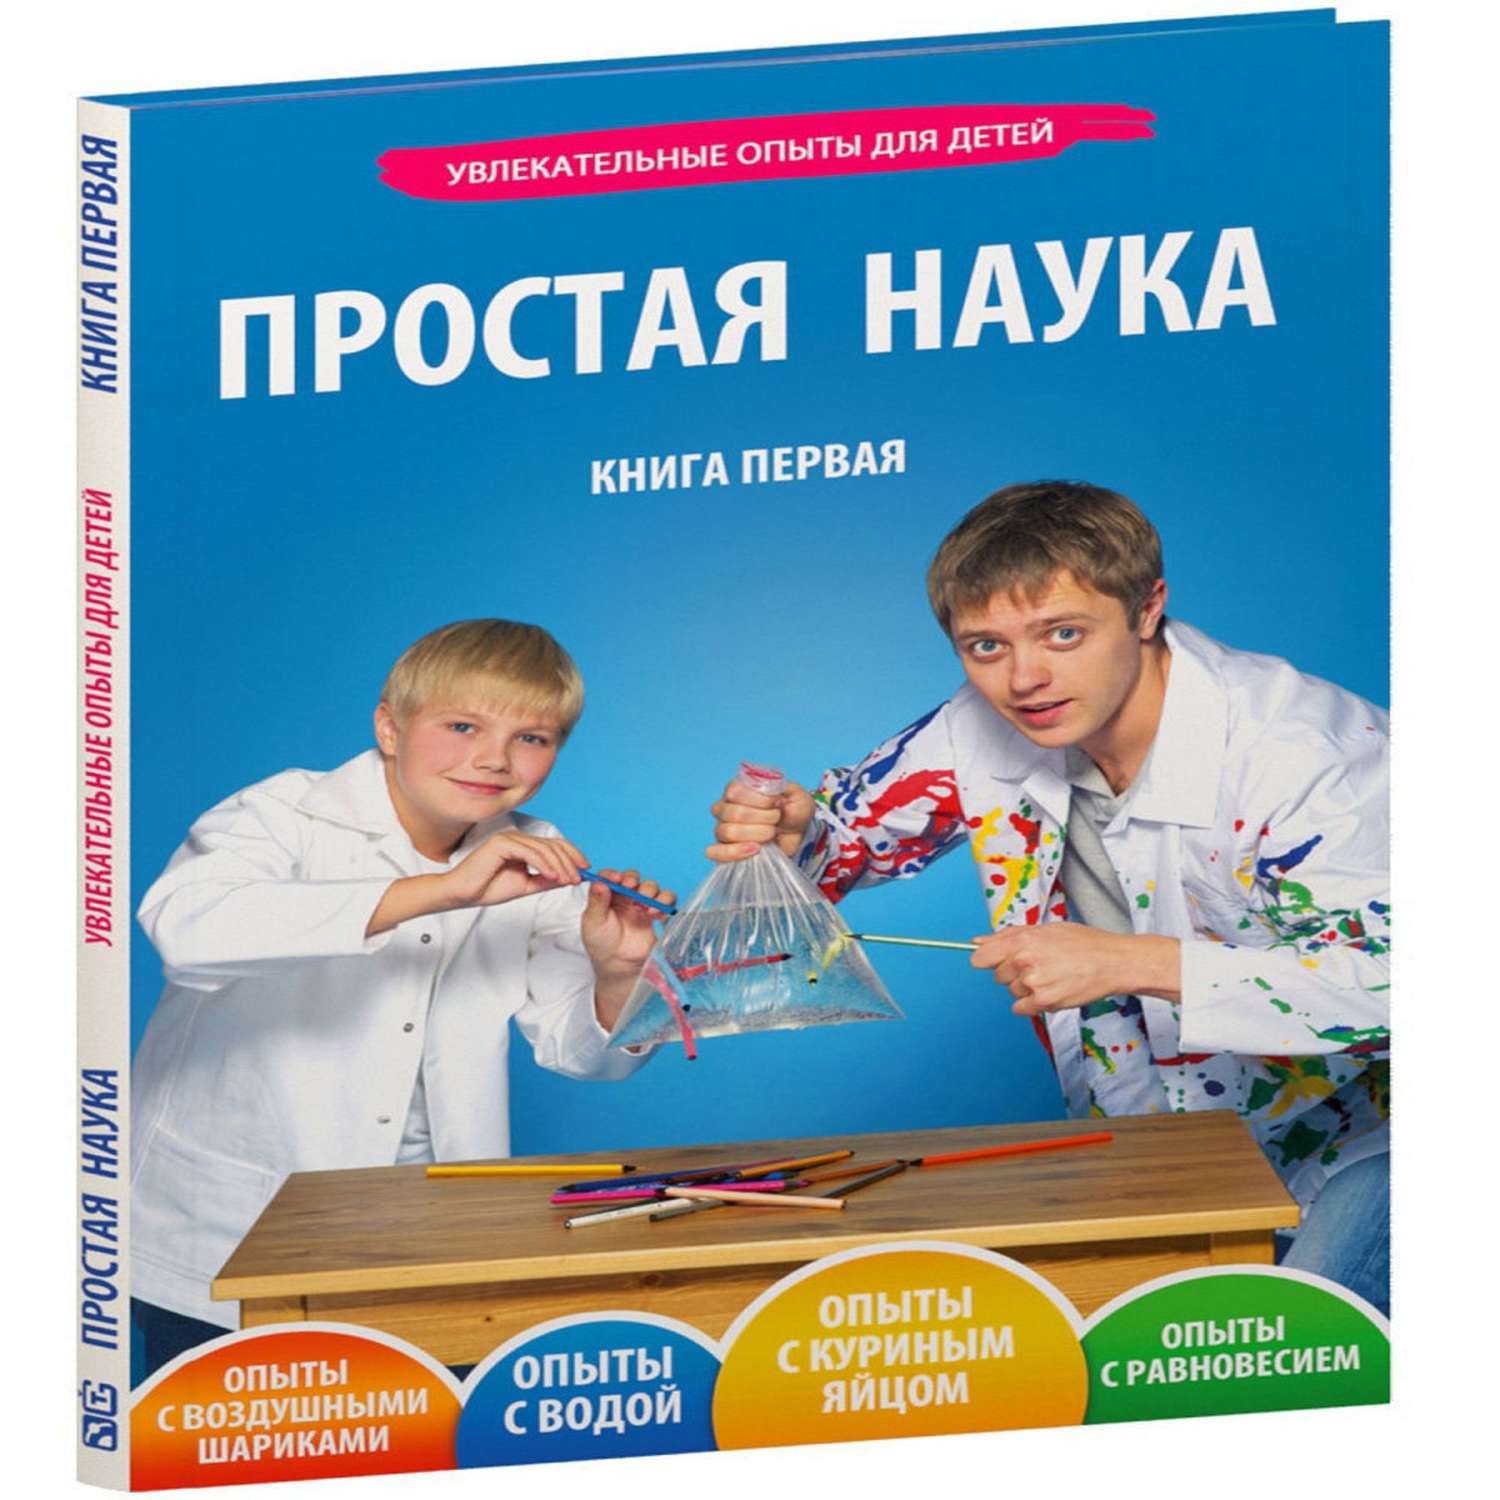 Книга Простая наука Увлекательные опыты для детей арт.0001 - фото 1